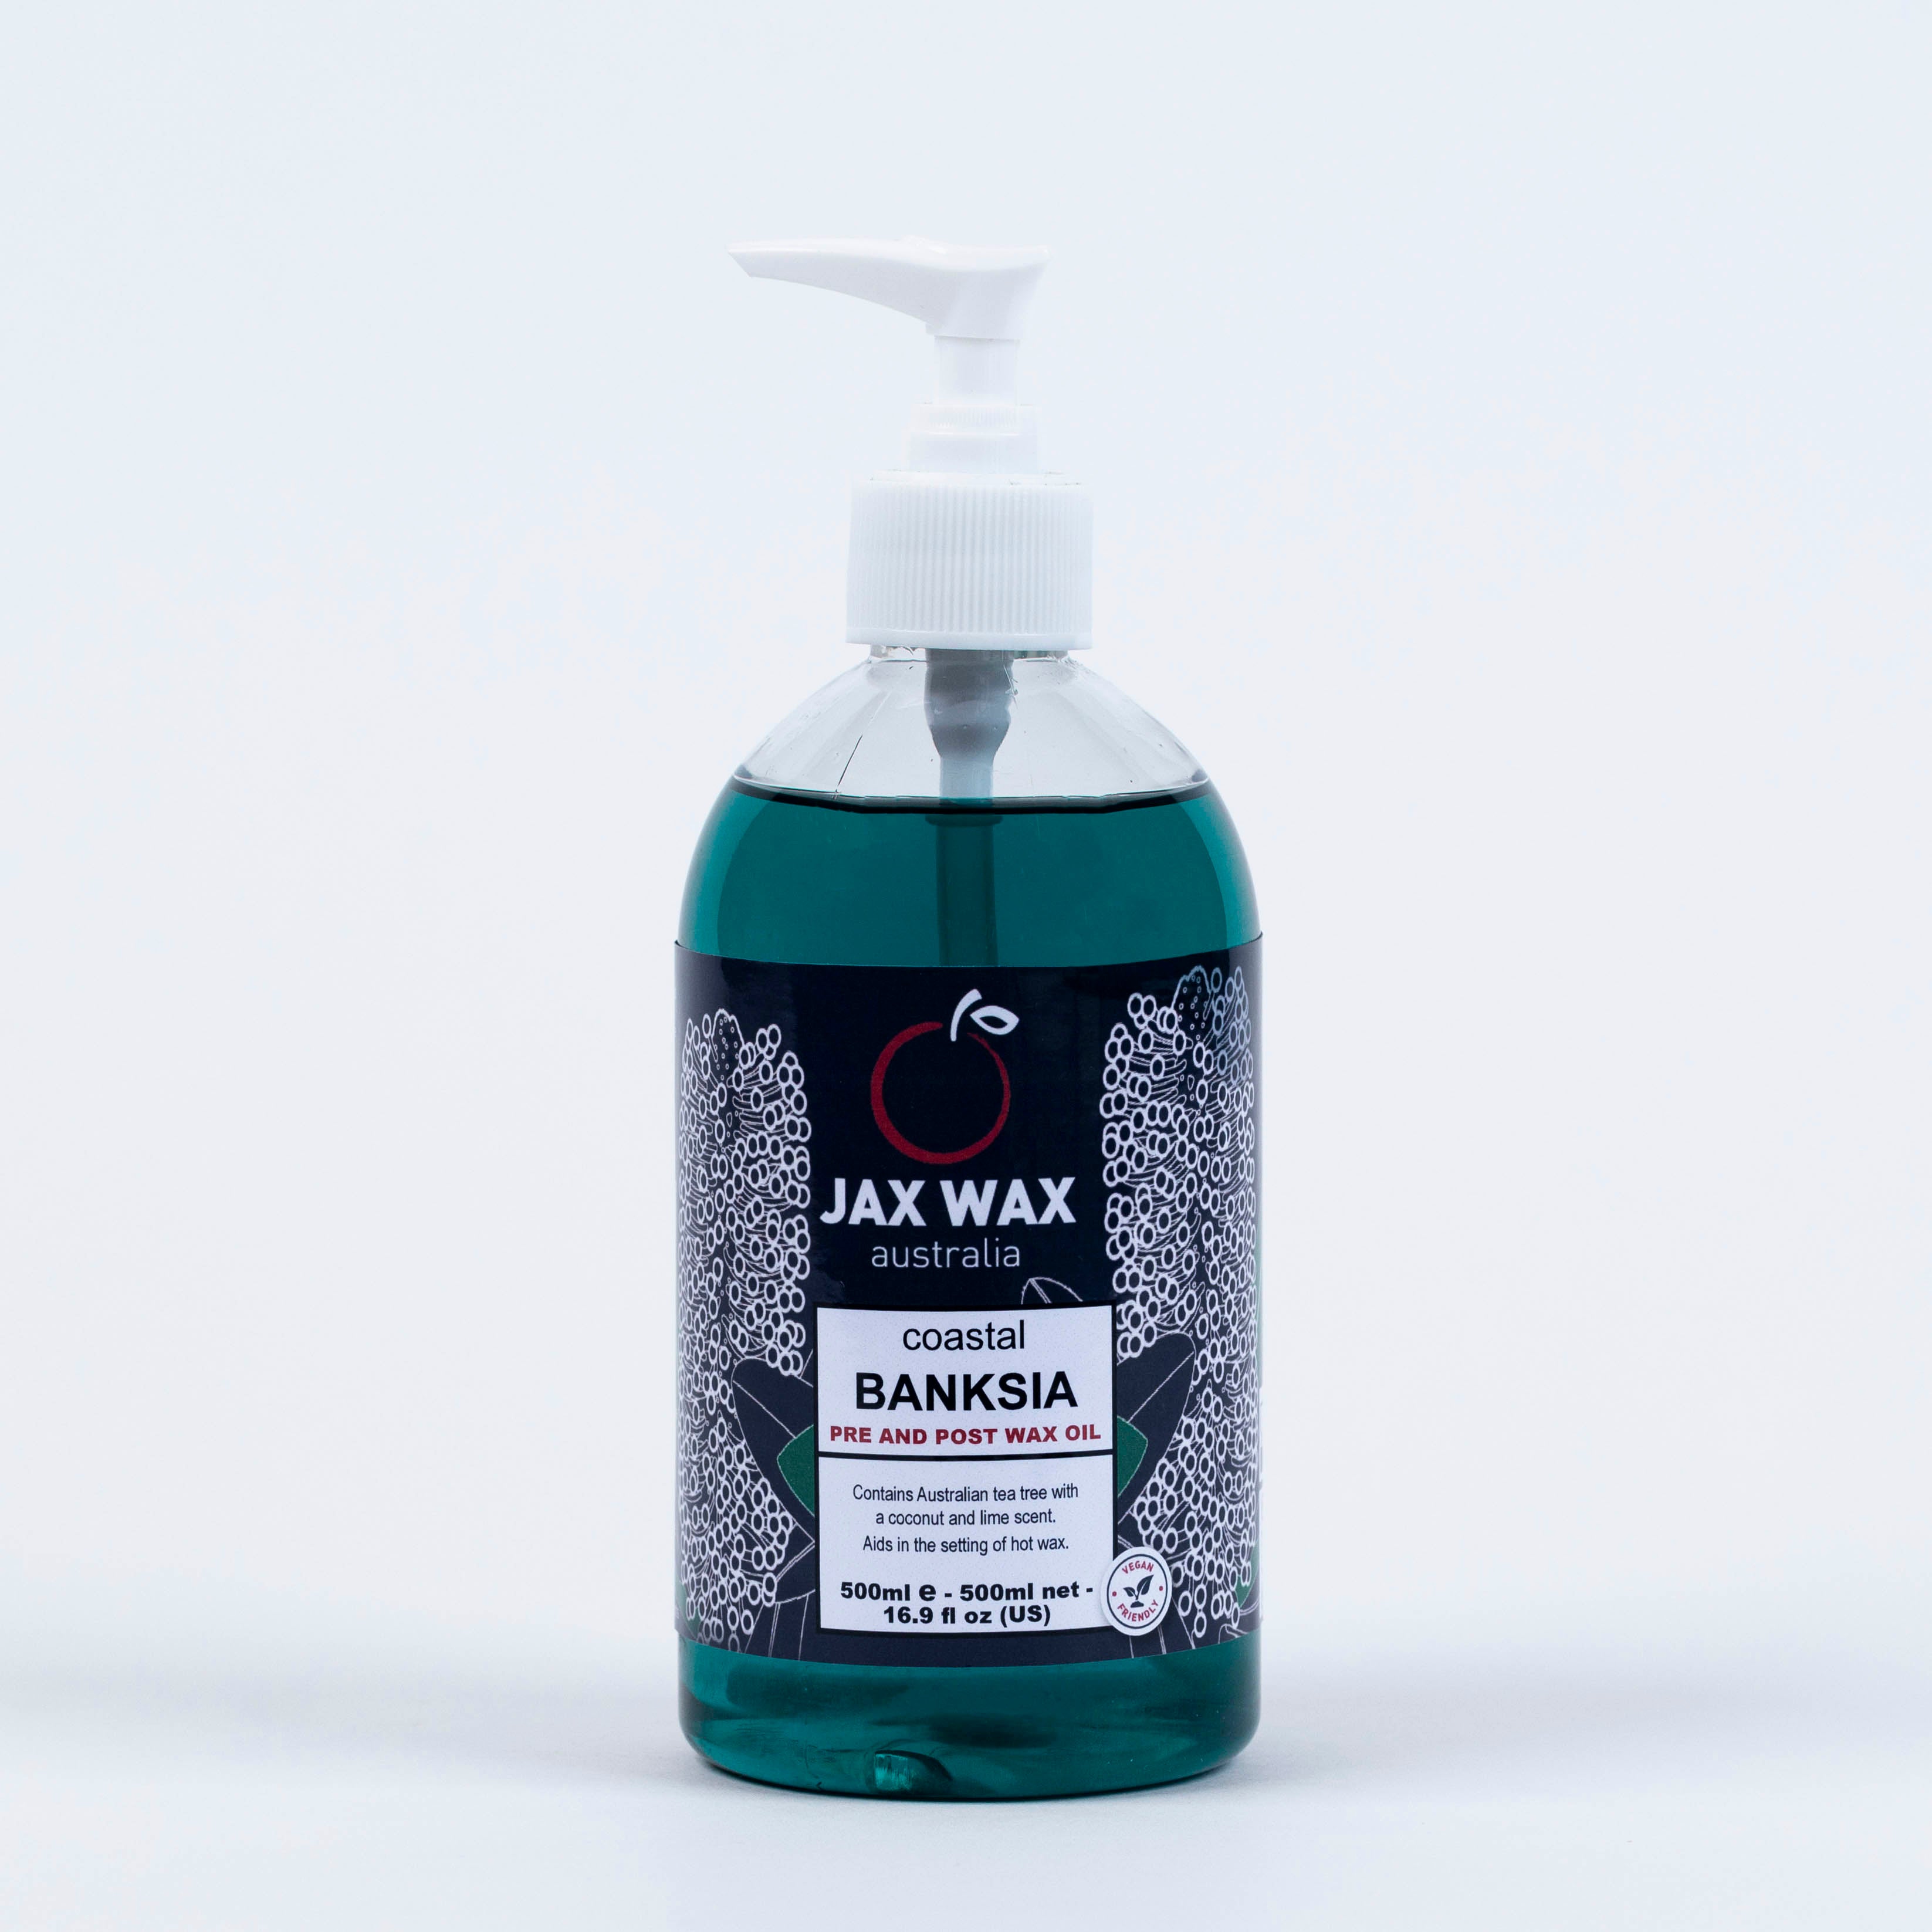 Jax Wax Coastal Banksia Pre and Post Wax Oil 500ml